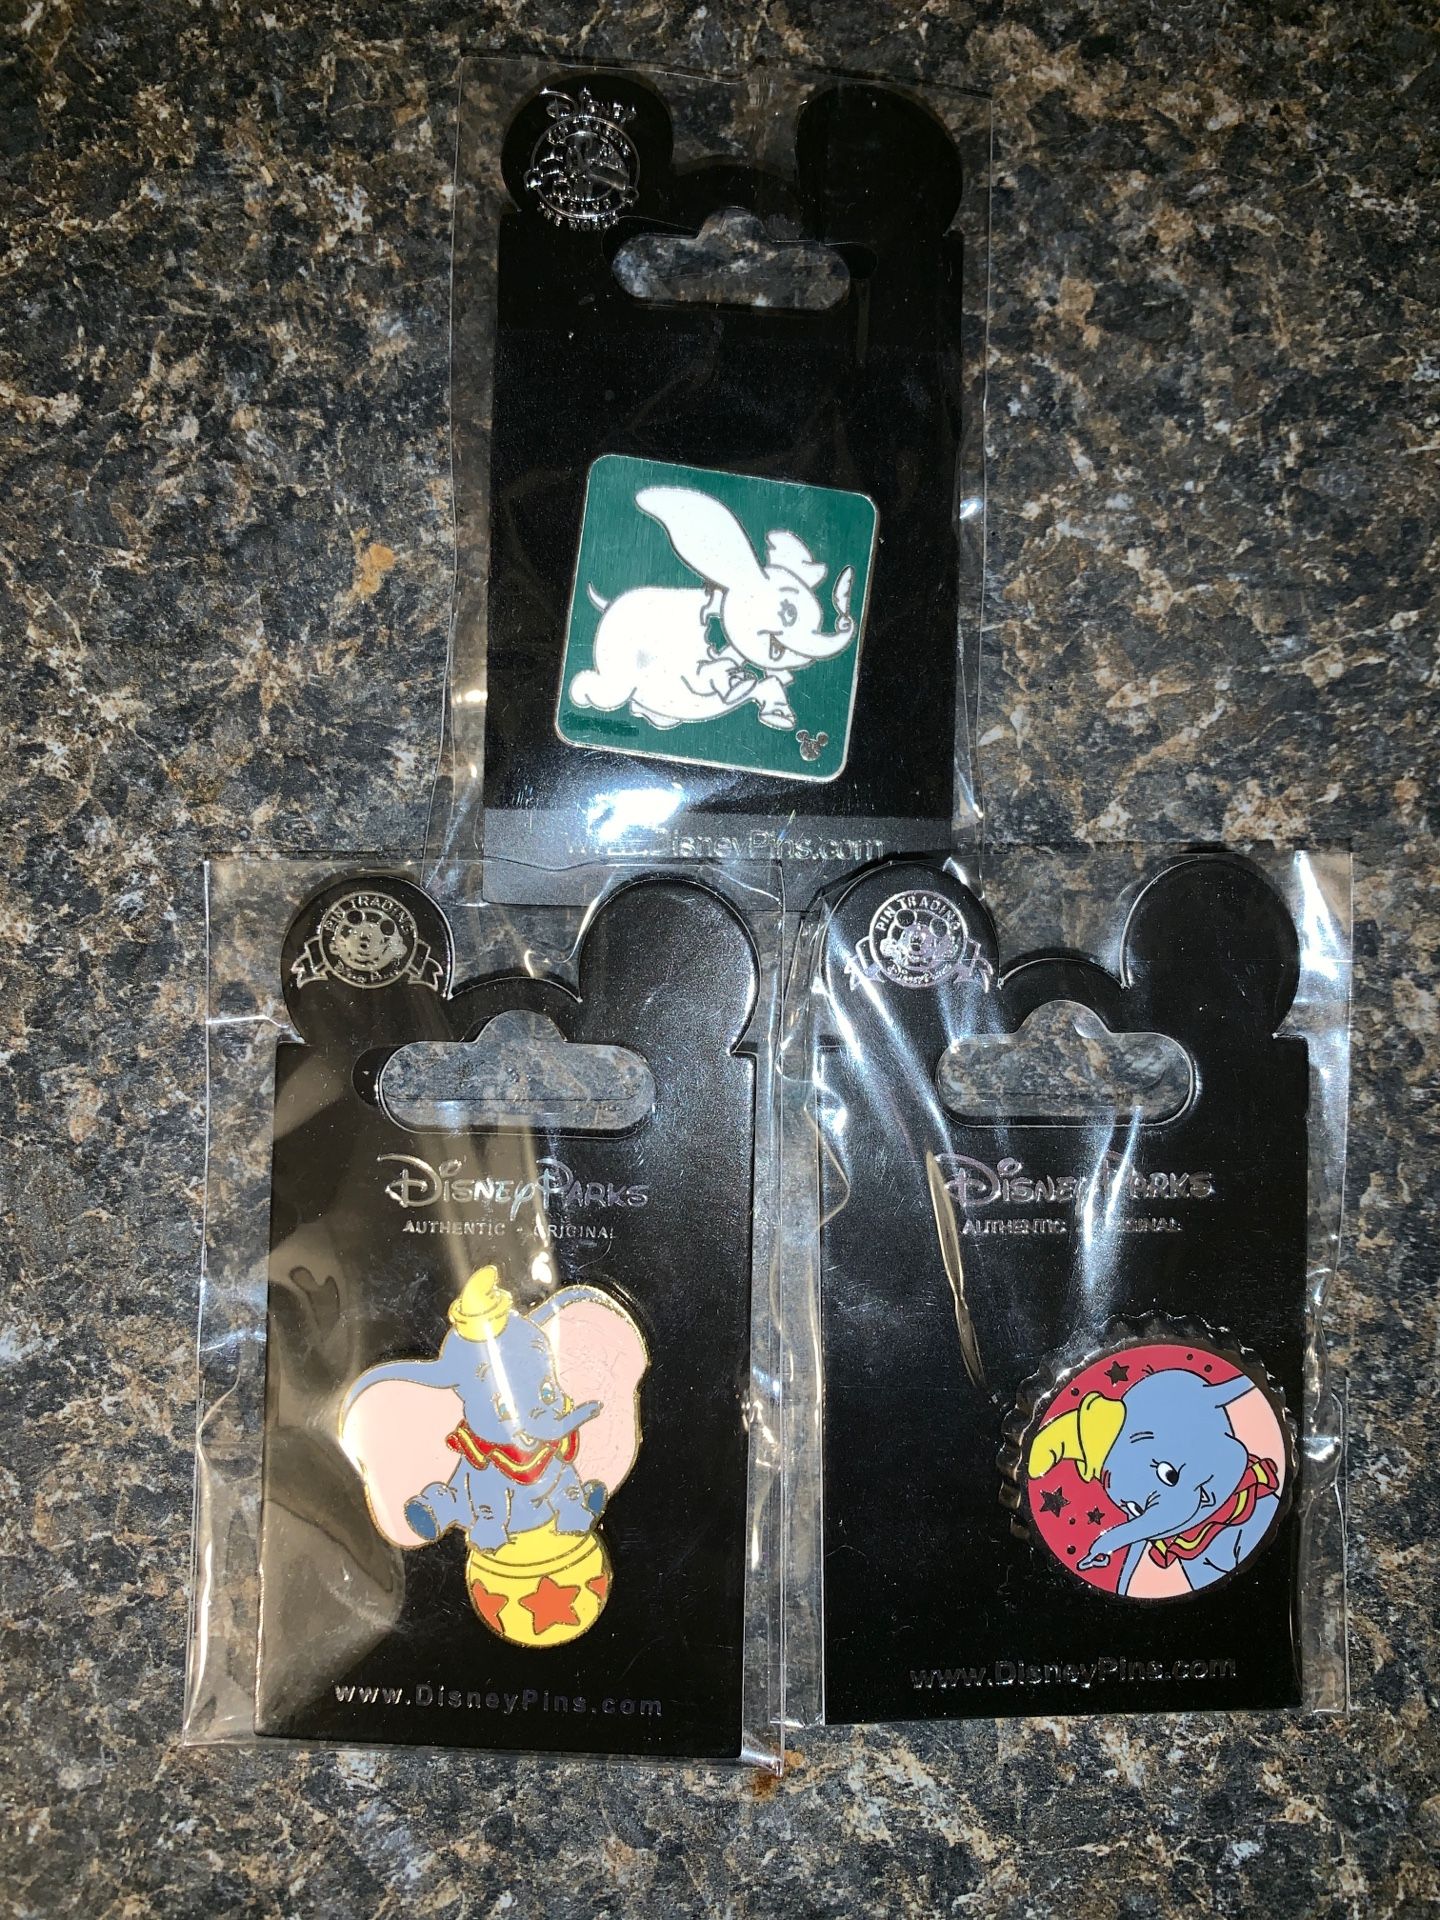 Dumbo Disney pins